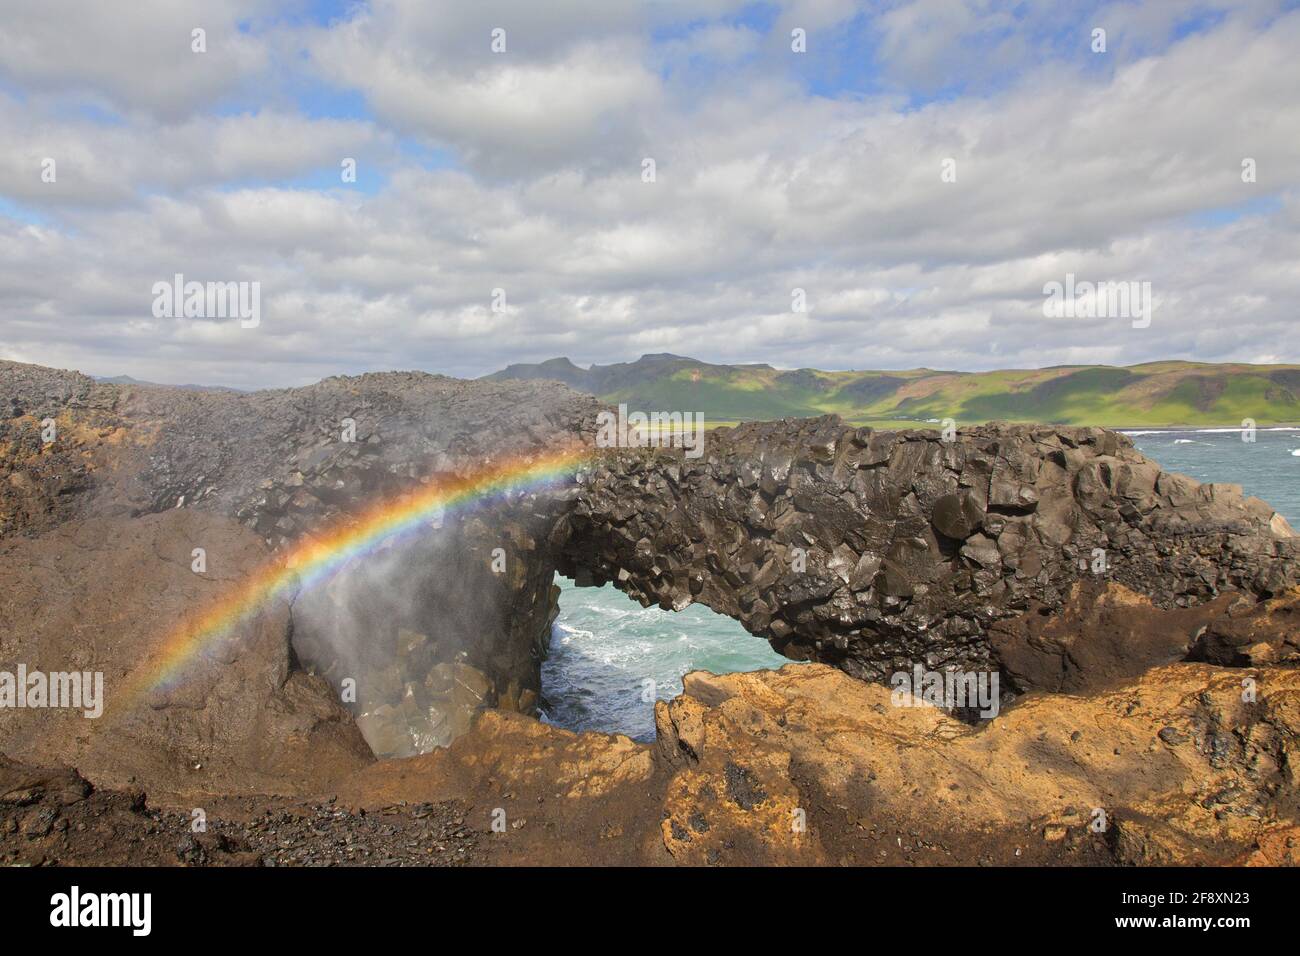 Regenbogen und natürlicher Bogen, erodierte schwarze Basaltsteinformation am Kap Dyrhólaey / Kap Portland bei Vík í Mýrdal, Island Stockfoto